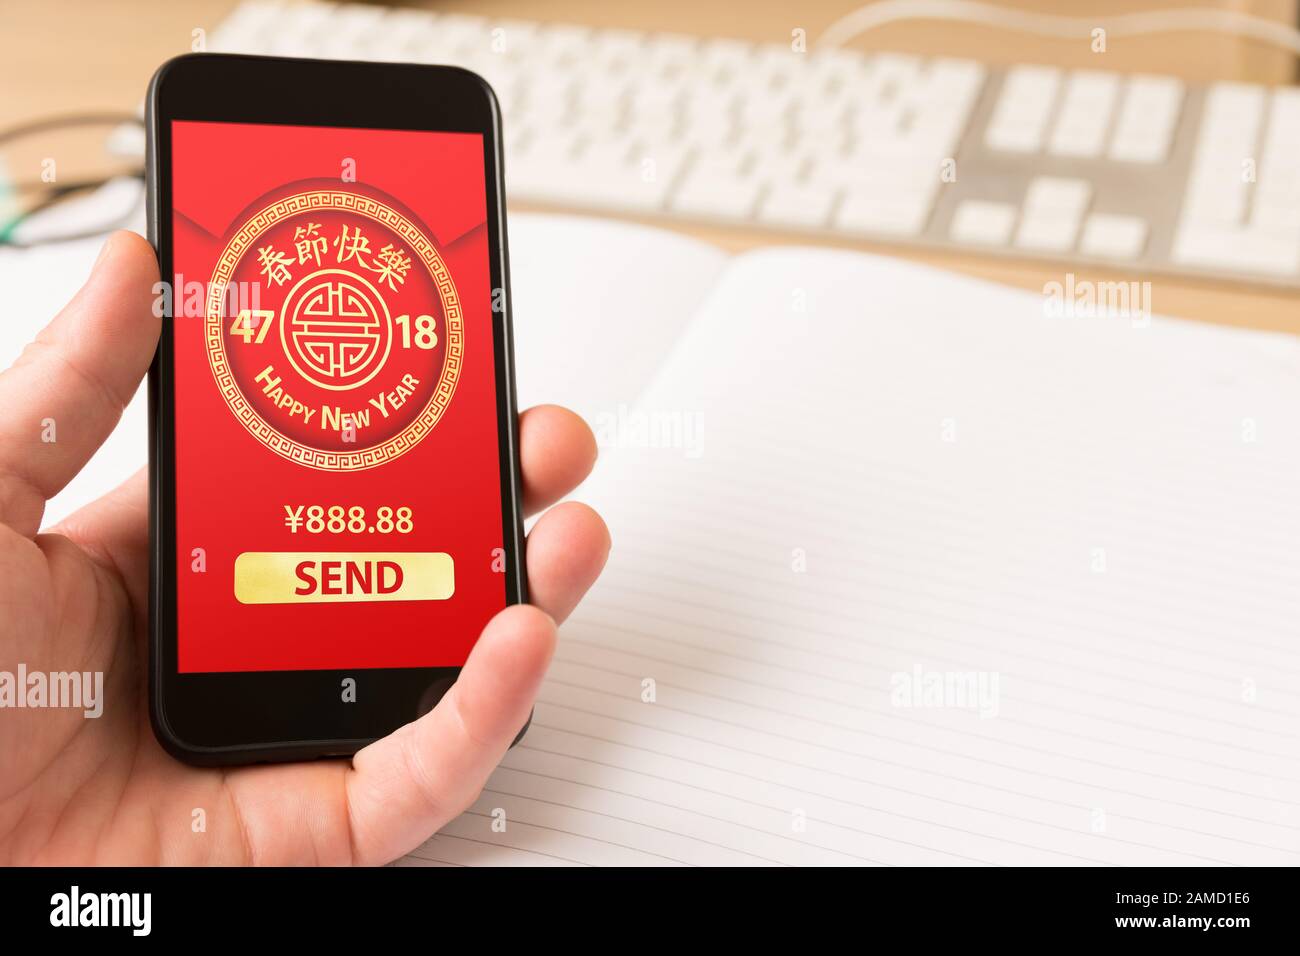 Tenere a mano lo smartphone con pacchetto digitale rosso per il nuovo anno cinese visualizzato sullo schermo - feste e concetto di tecnologia. Foto Stock